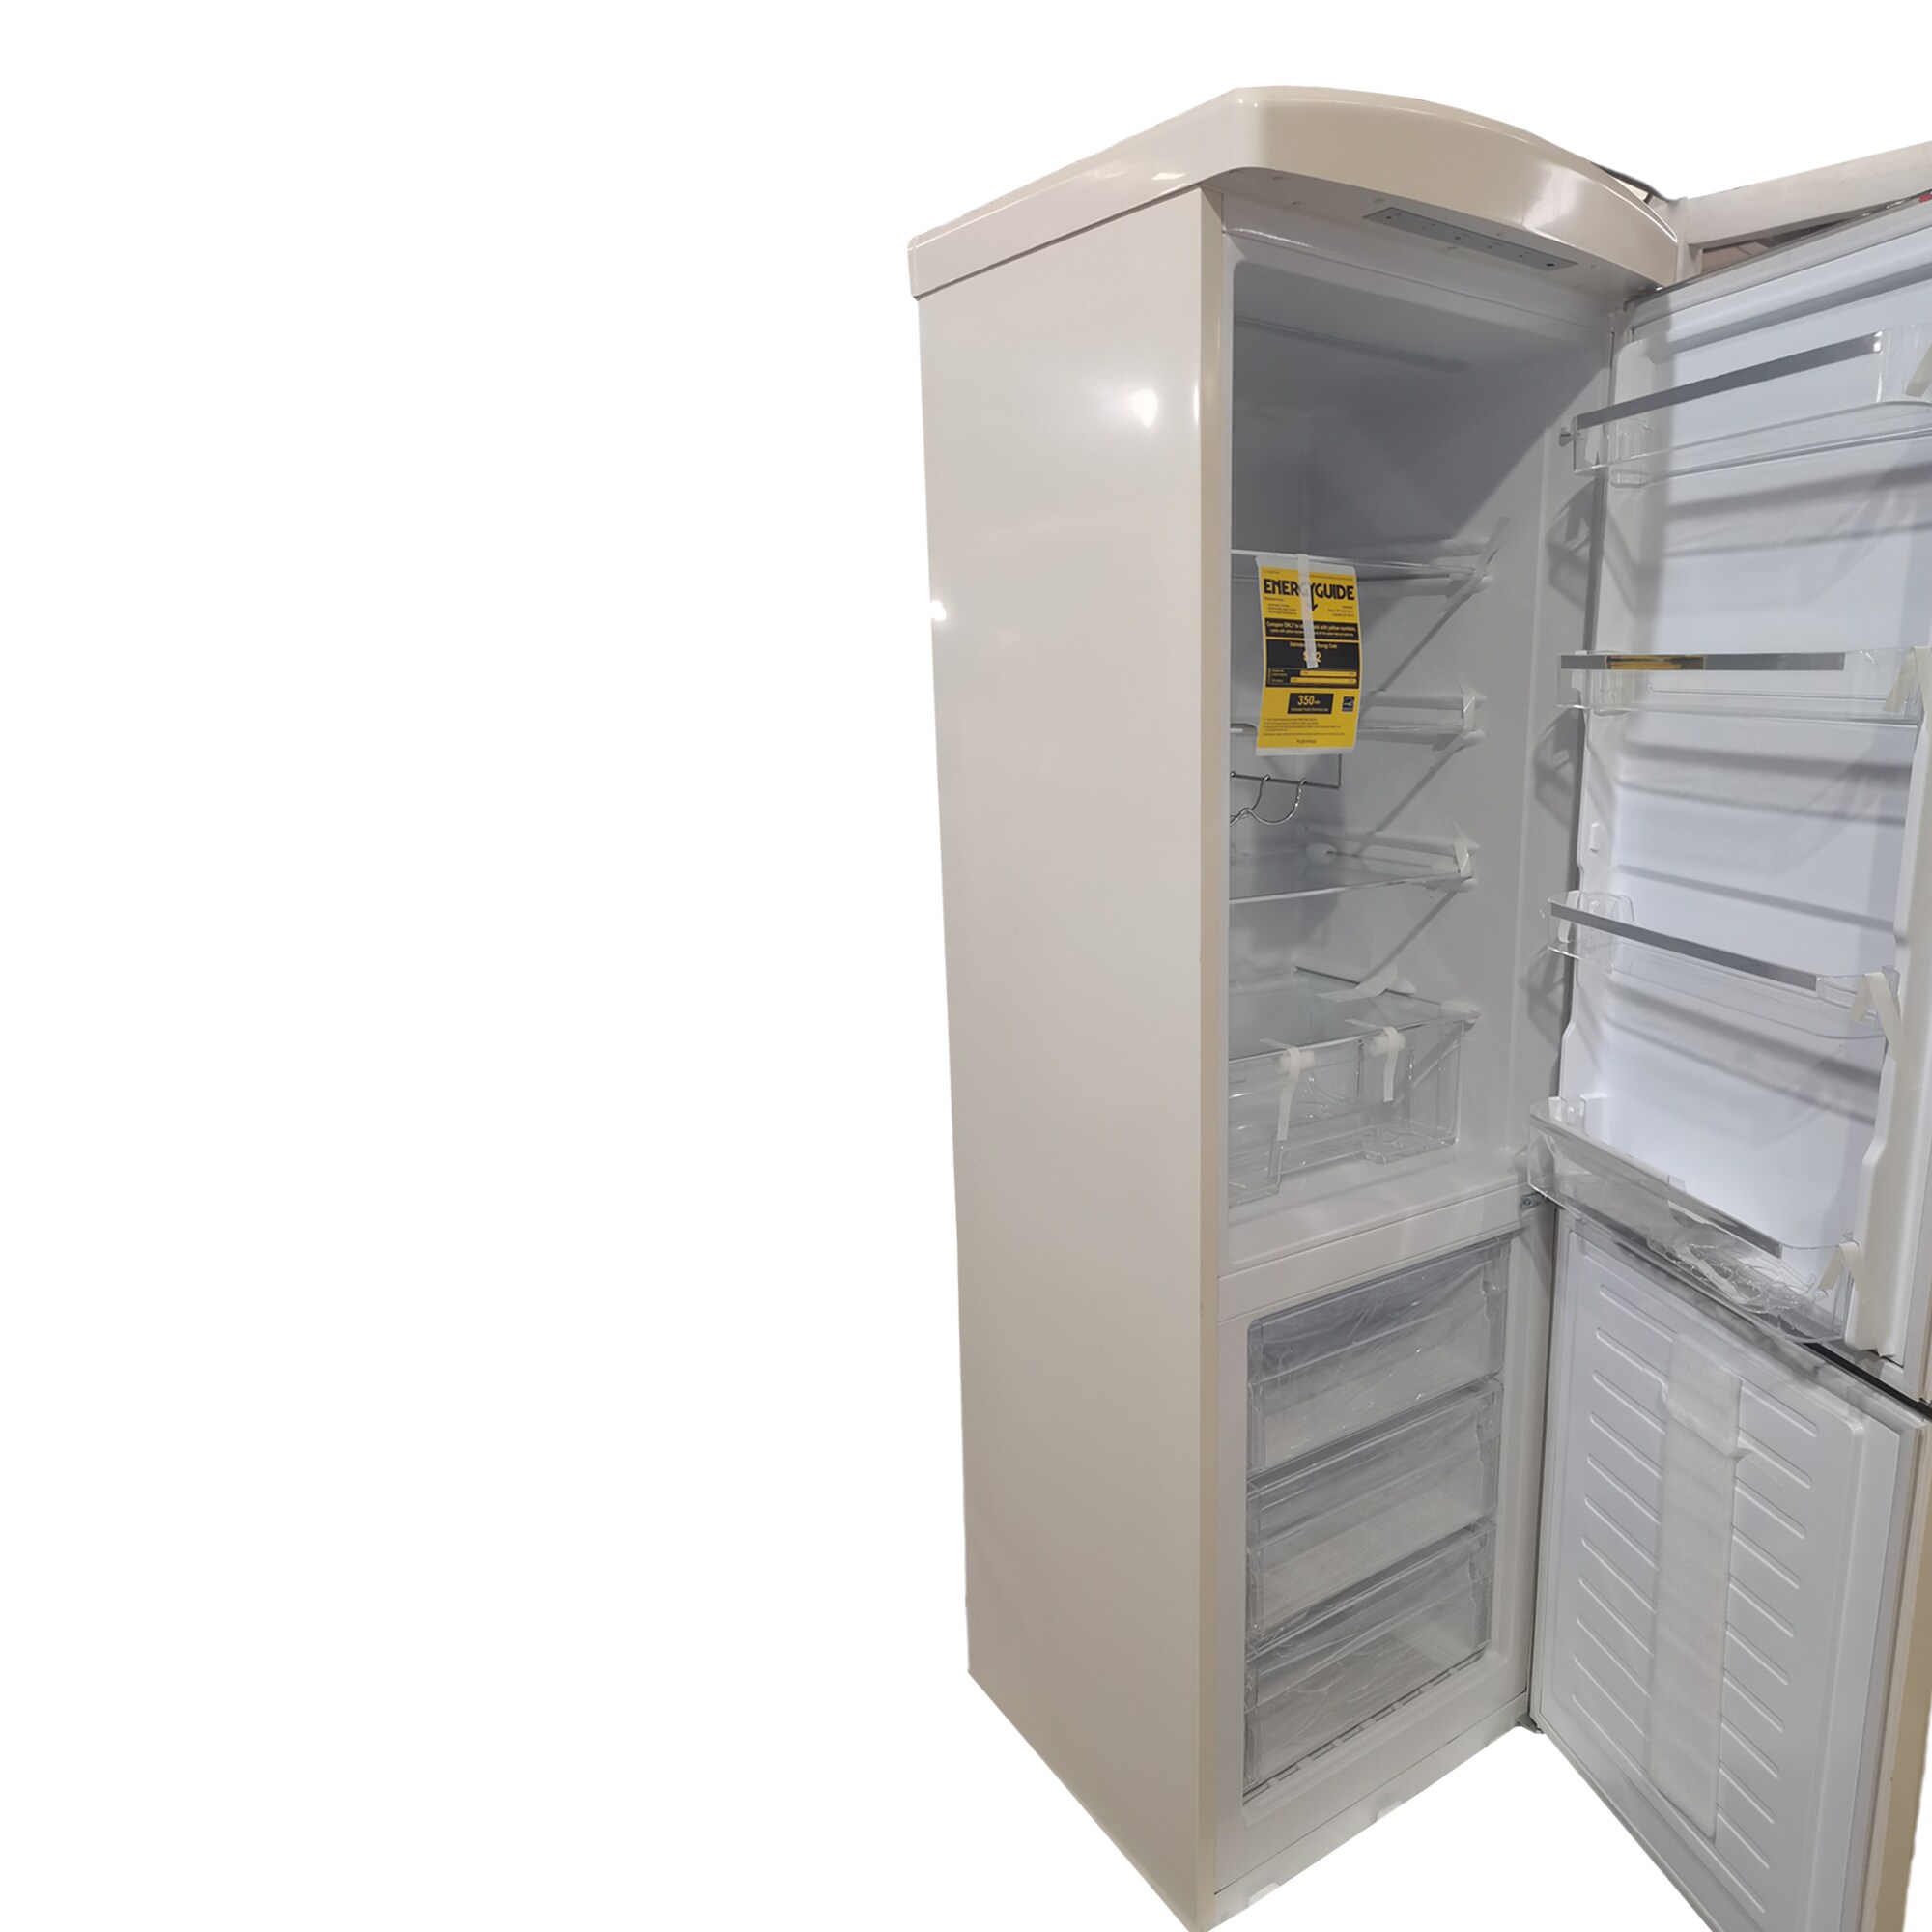 ConServ 10.7-cu ft Bottom-Freezer Refrigerator (Cream) ENERGY STAR